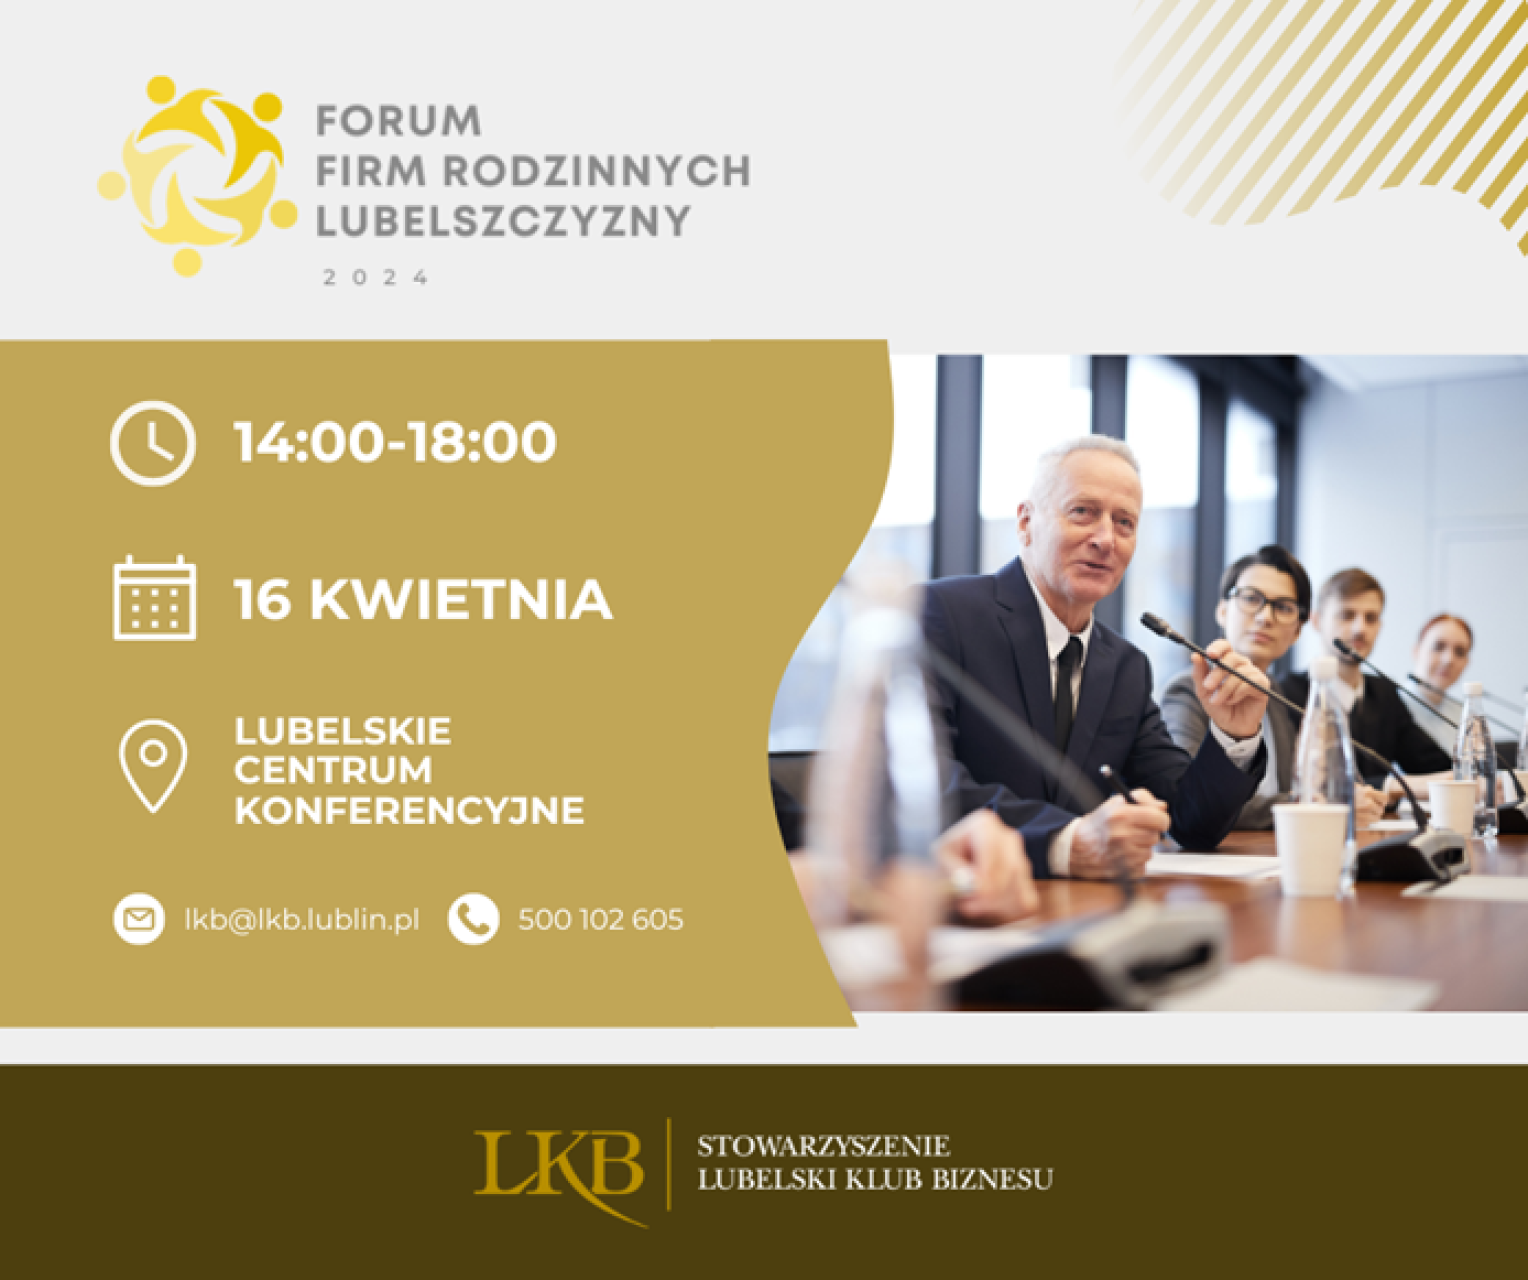 Forum Firm Rodzinnych 16 kwietnia w Lublinie 